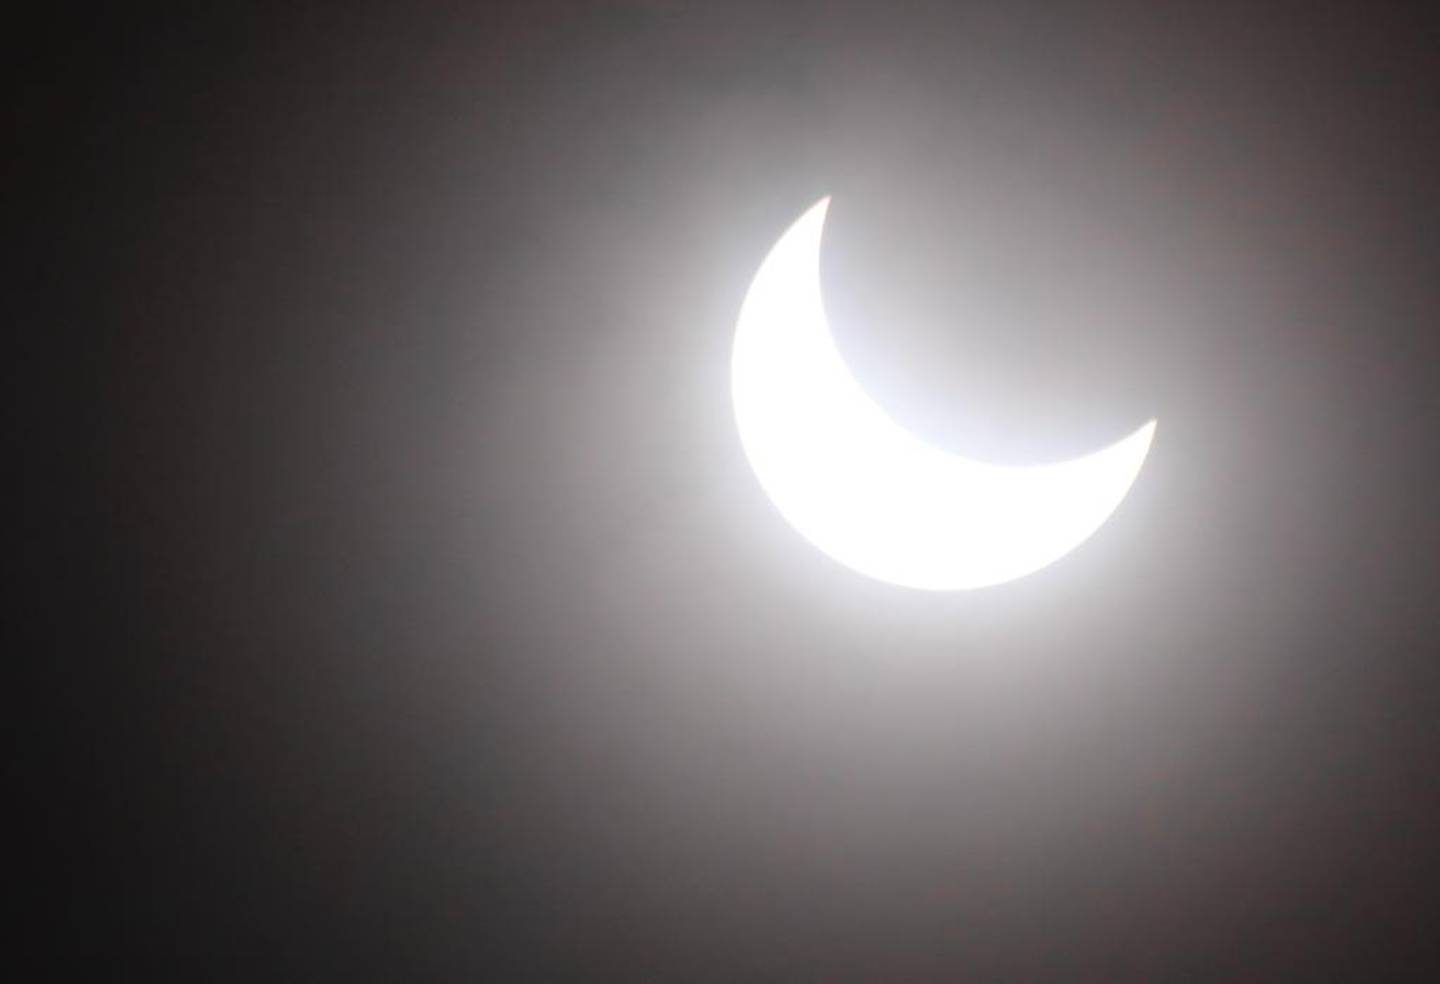 Hacia las 11:35 a.m., así iba la evolución del eclipse solar sobre suelo costarricense. Fotografía: Rafael Pacheco Granados.